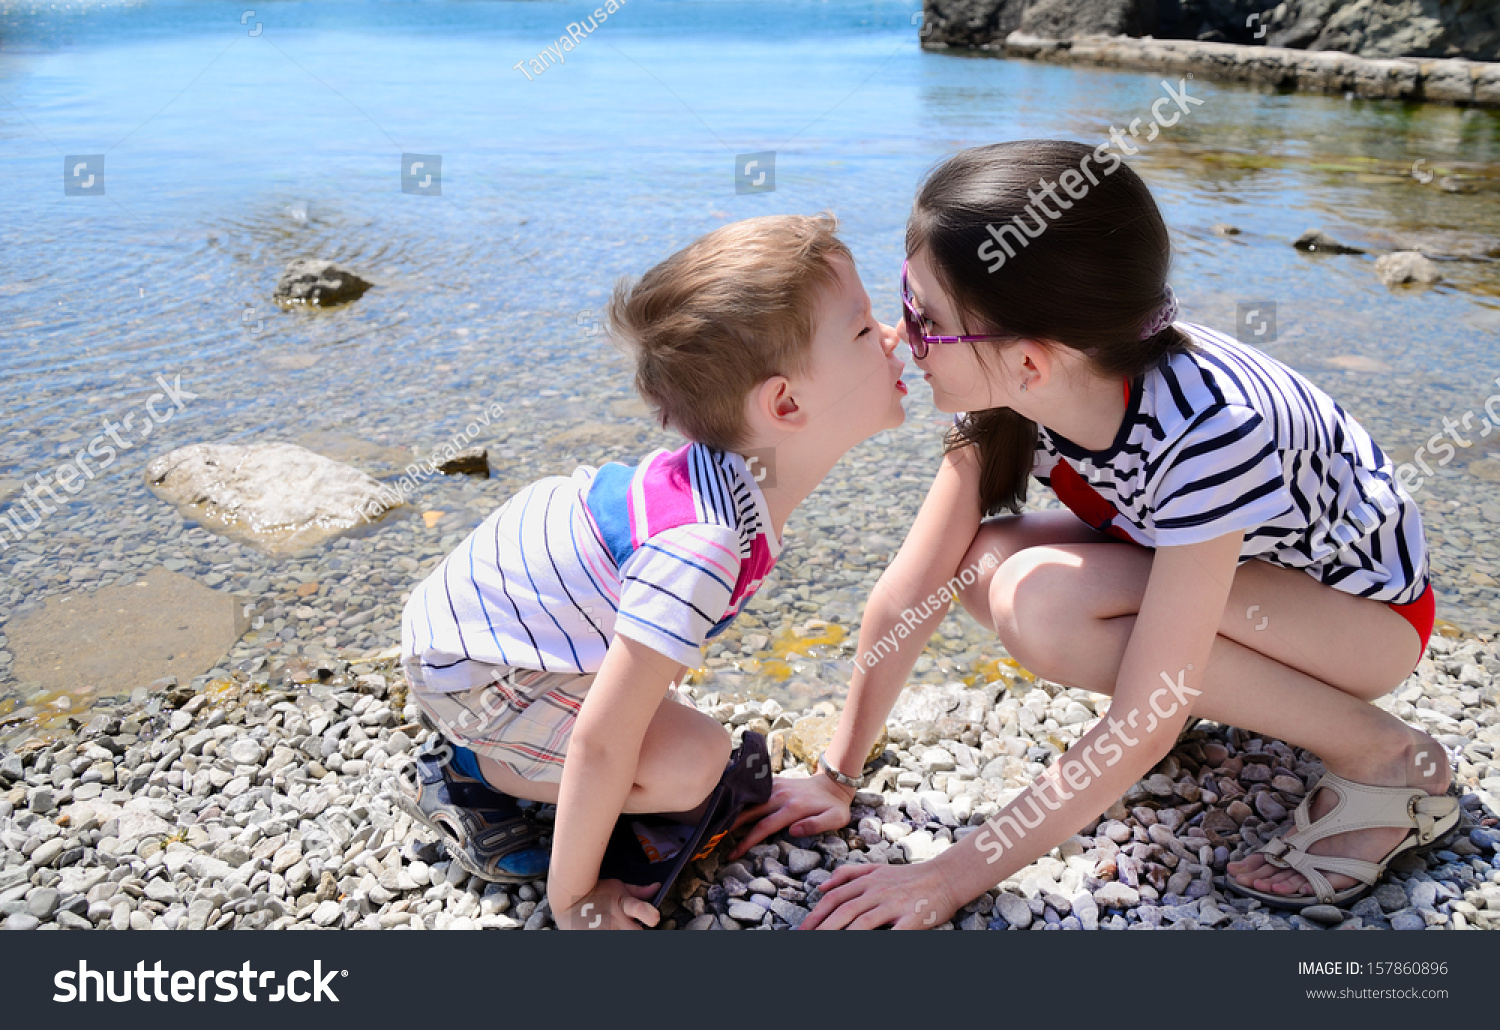 Лижет киску маленькой девочке. Сестрички на пляжу лет 10. Маленький мальчик и девочка занимаются. Брат и сестра целуются. Поцелуй в 10 лет.